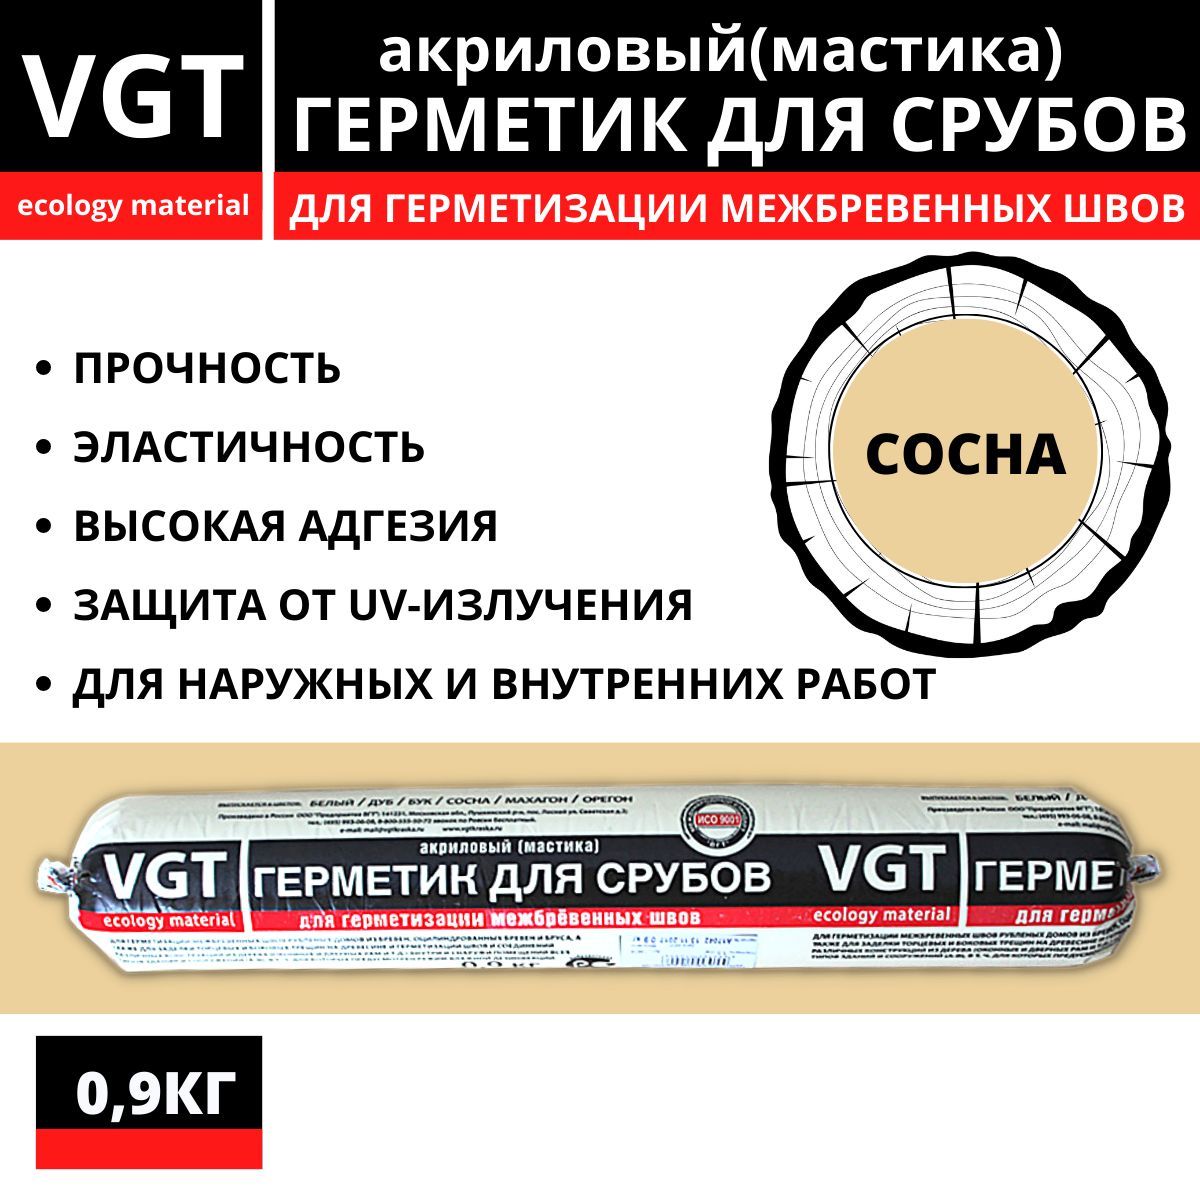 ГерметикакриловыйVGT(мастика)длясрубовсосна0,9кг